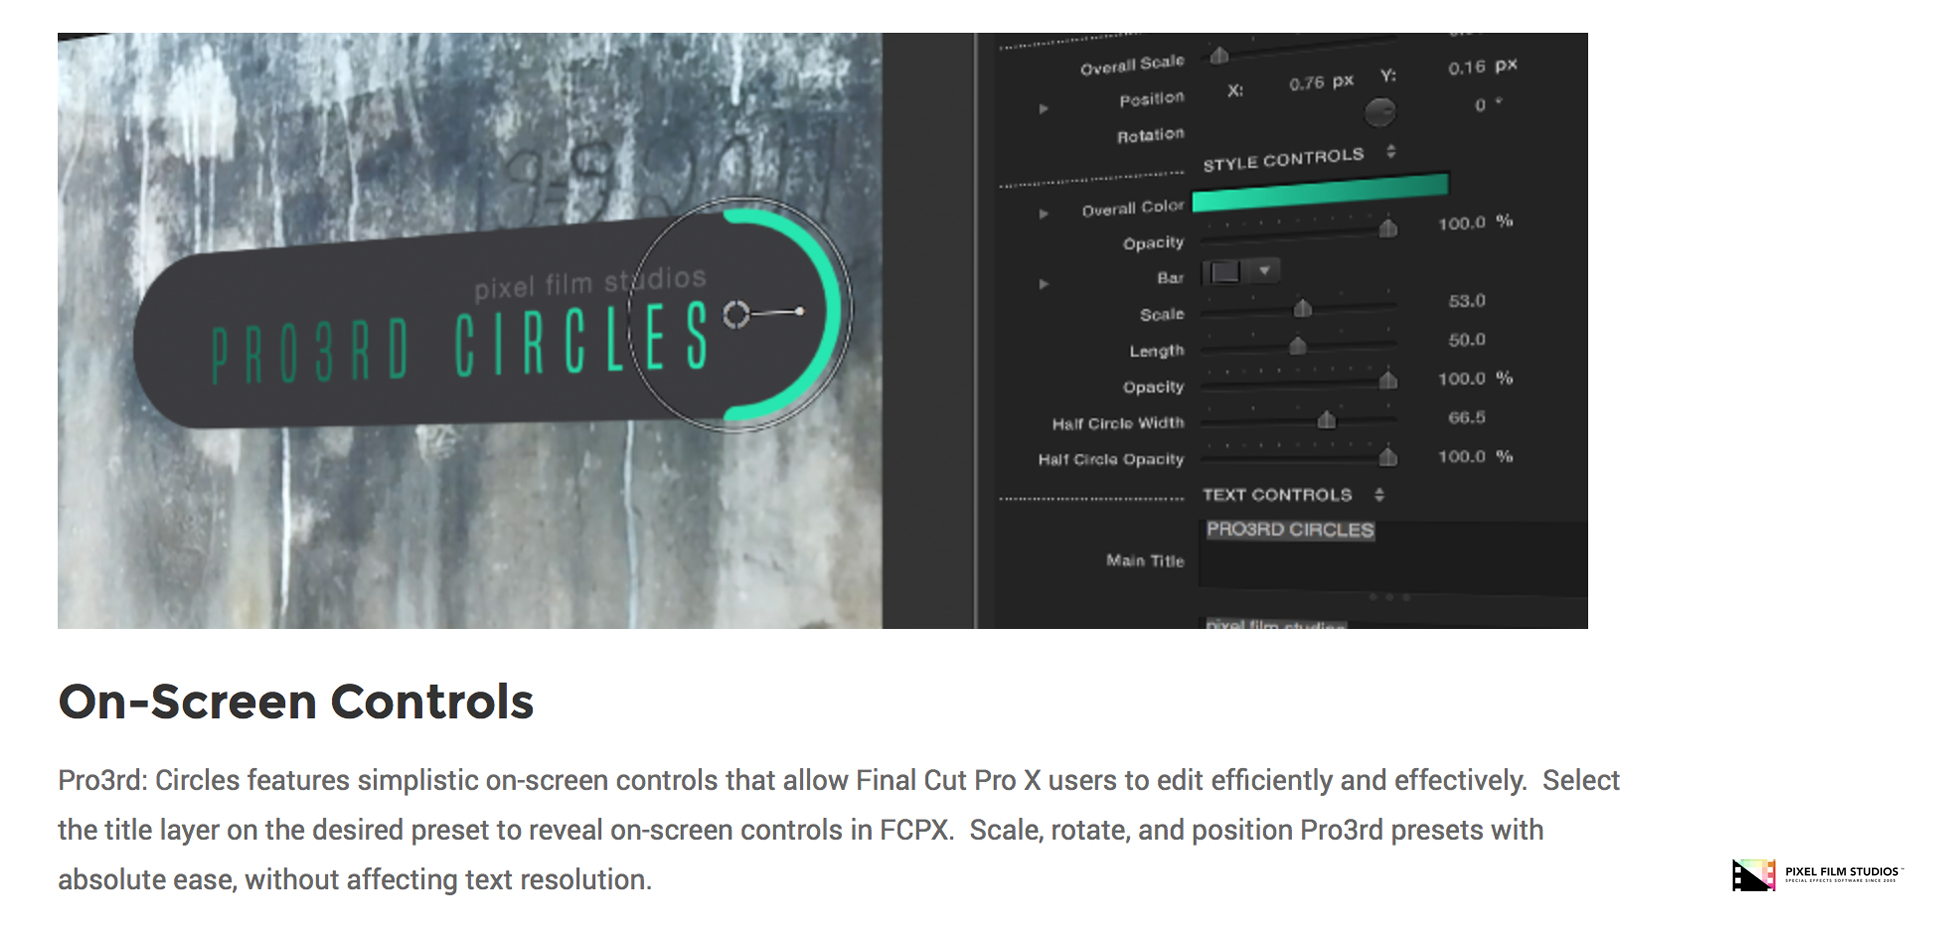 Pixel Film Studios - Pro3rd Circles - FCPX Plugin